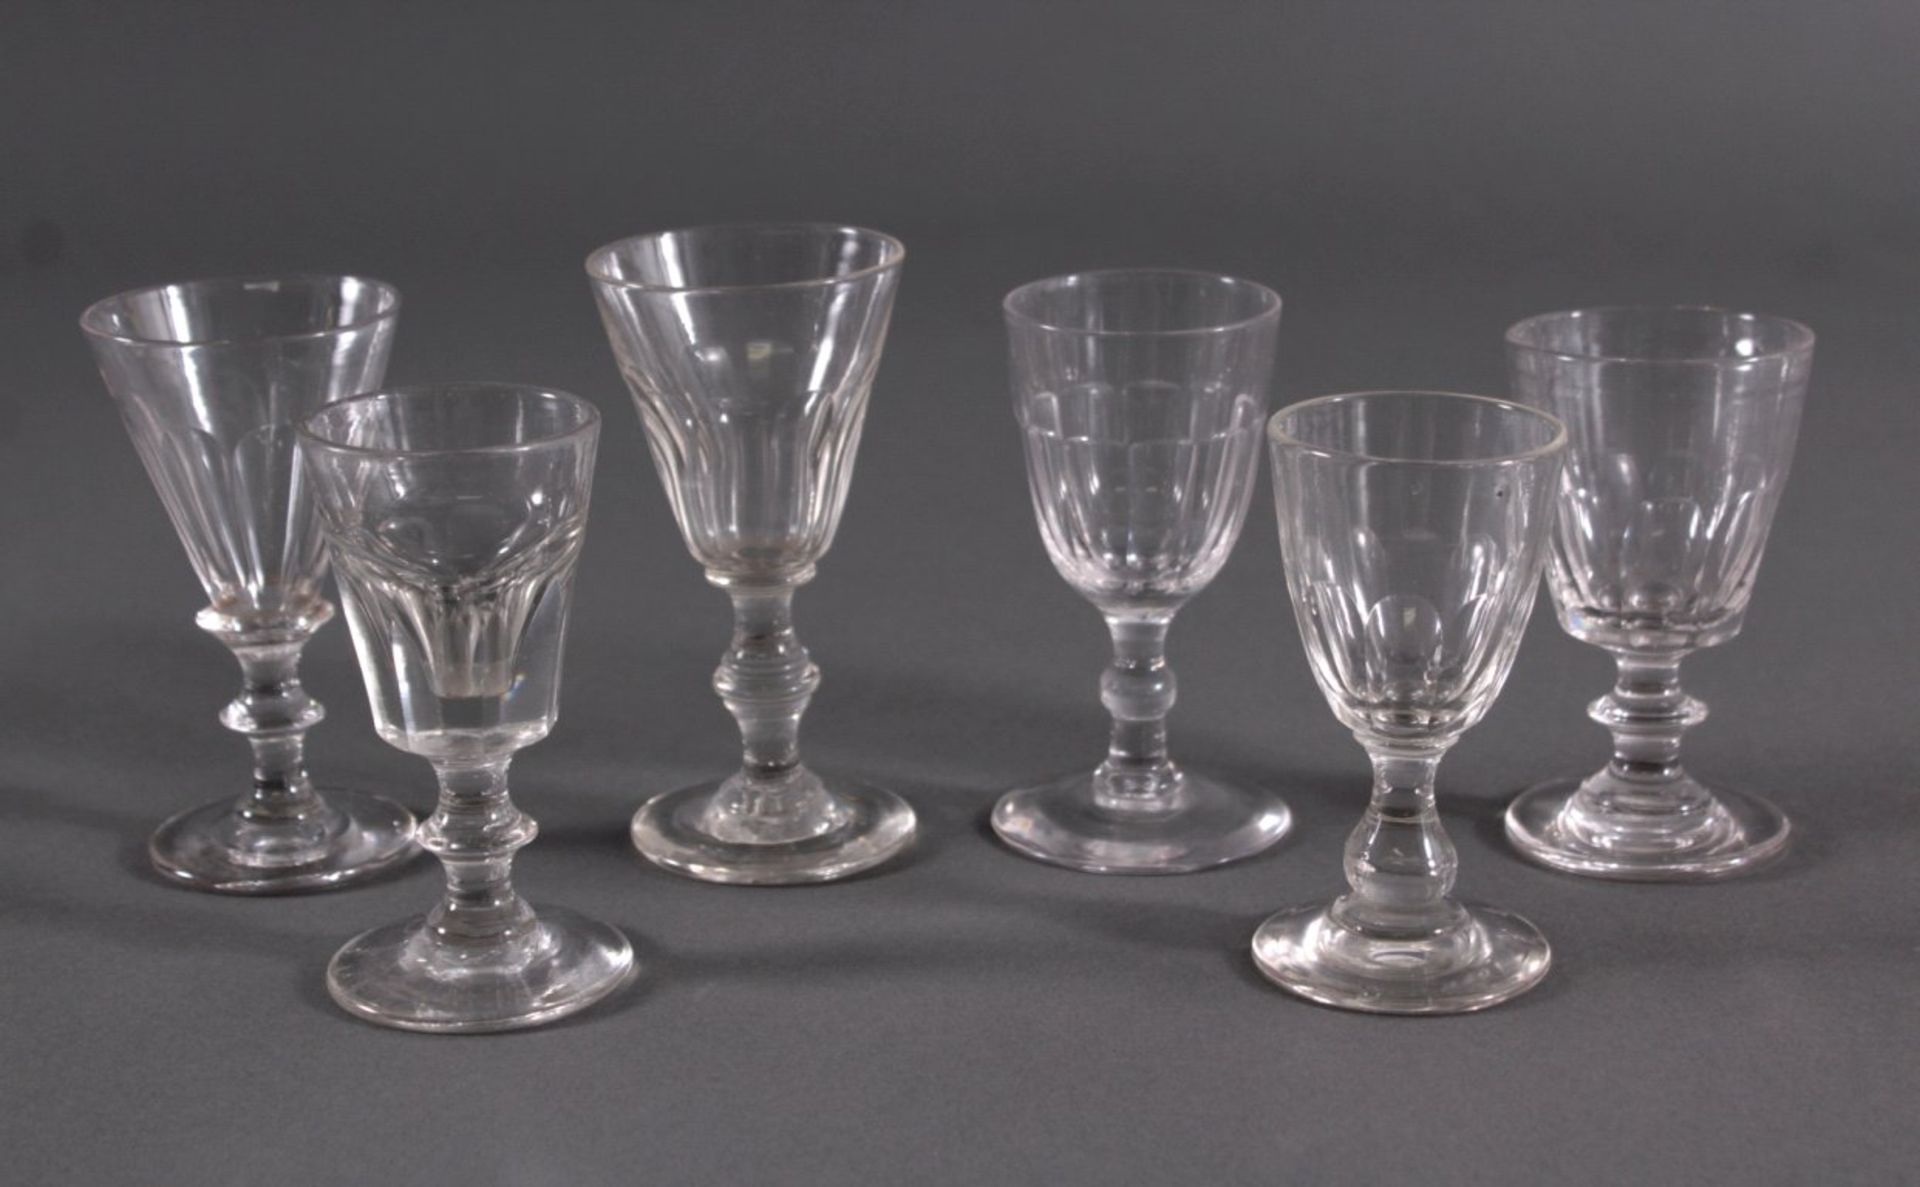 Sechs Gläser, 19. Jh.Mundgeblasenes Klarglas, Scheibenfuß, kelchförmige Kuppa, imunteren Teil